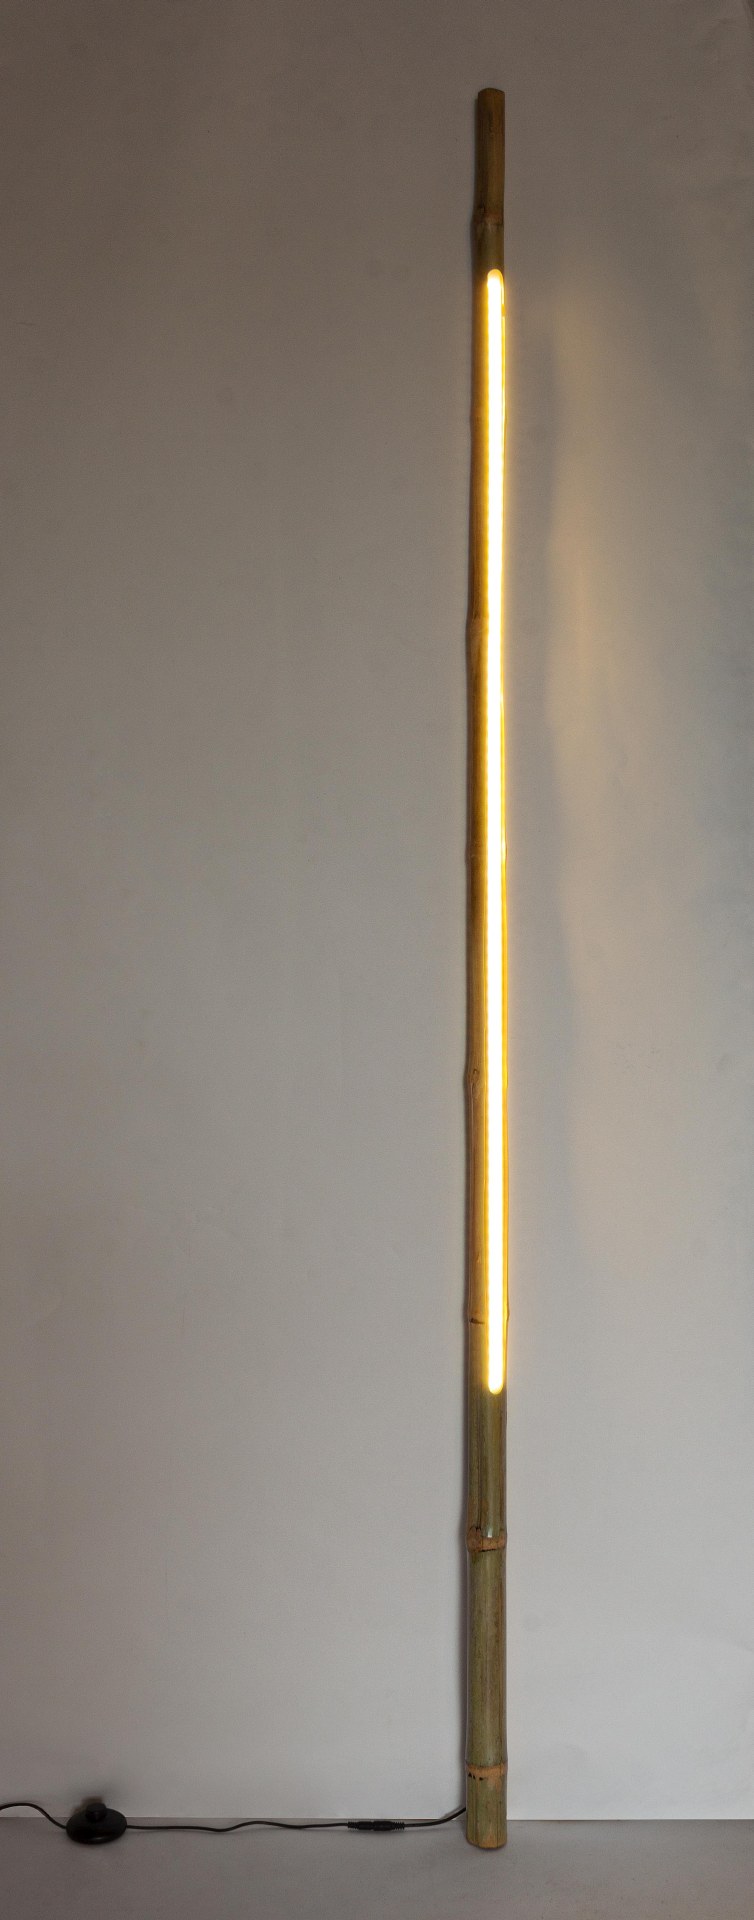 Die Stehleuchte LED überzeugt mit ihrem klassischen Design. Gefertigt wurde sie aus Bambus, welches einen natürlichen Farbton besitzt. Die Lichtquellen sind als Lichtstreifen angebracht. Die Lampe besitzt eine Höhe von 200 cm.